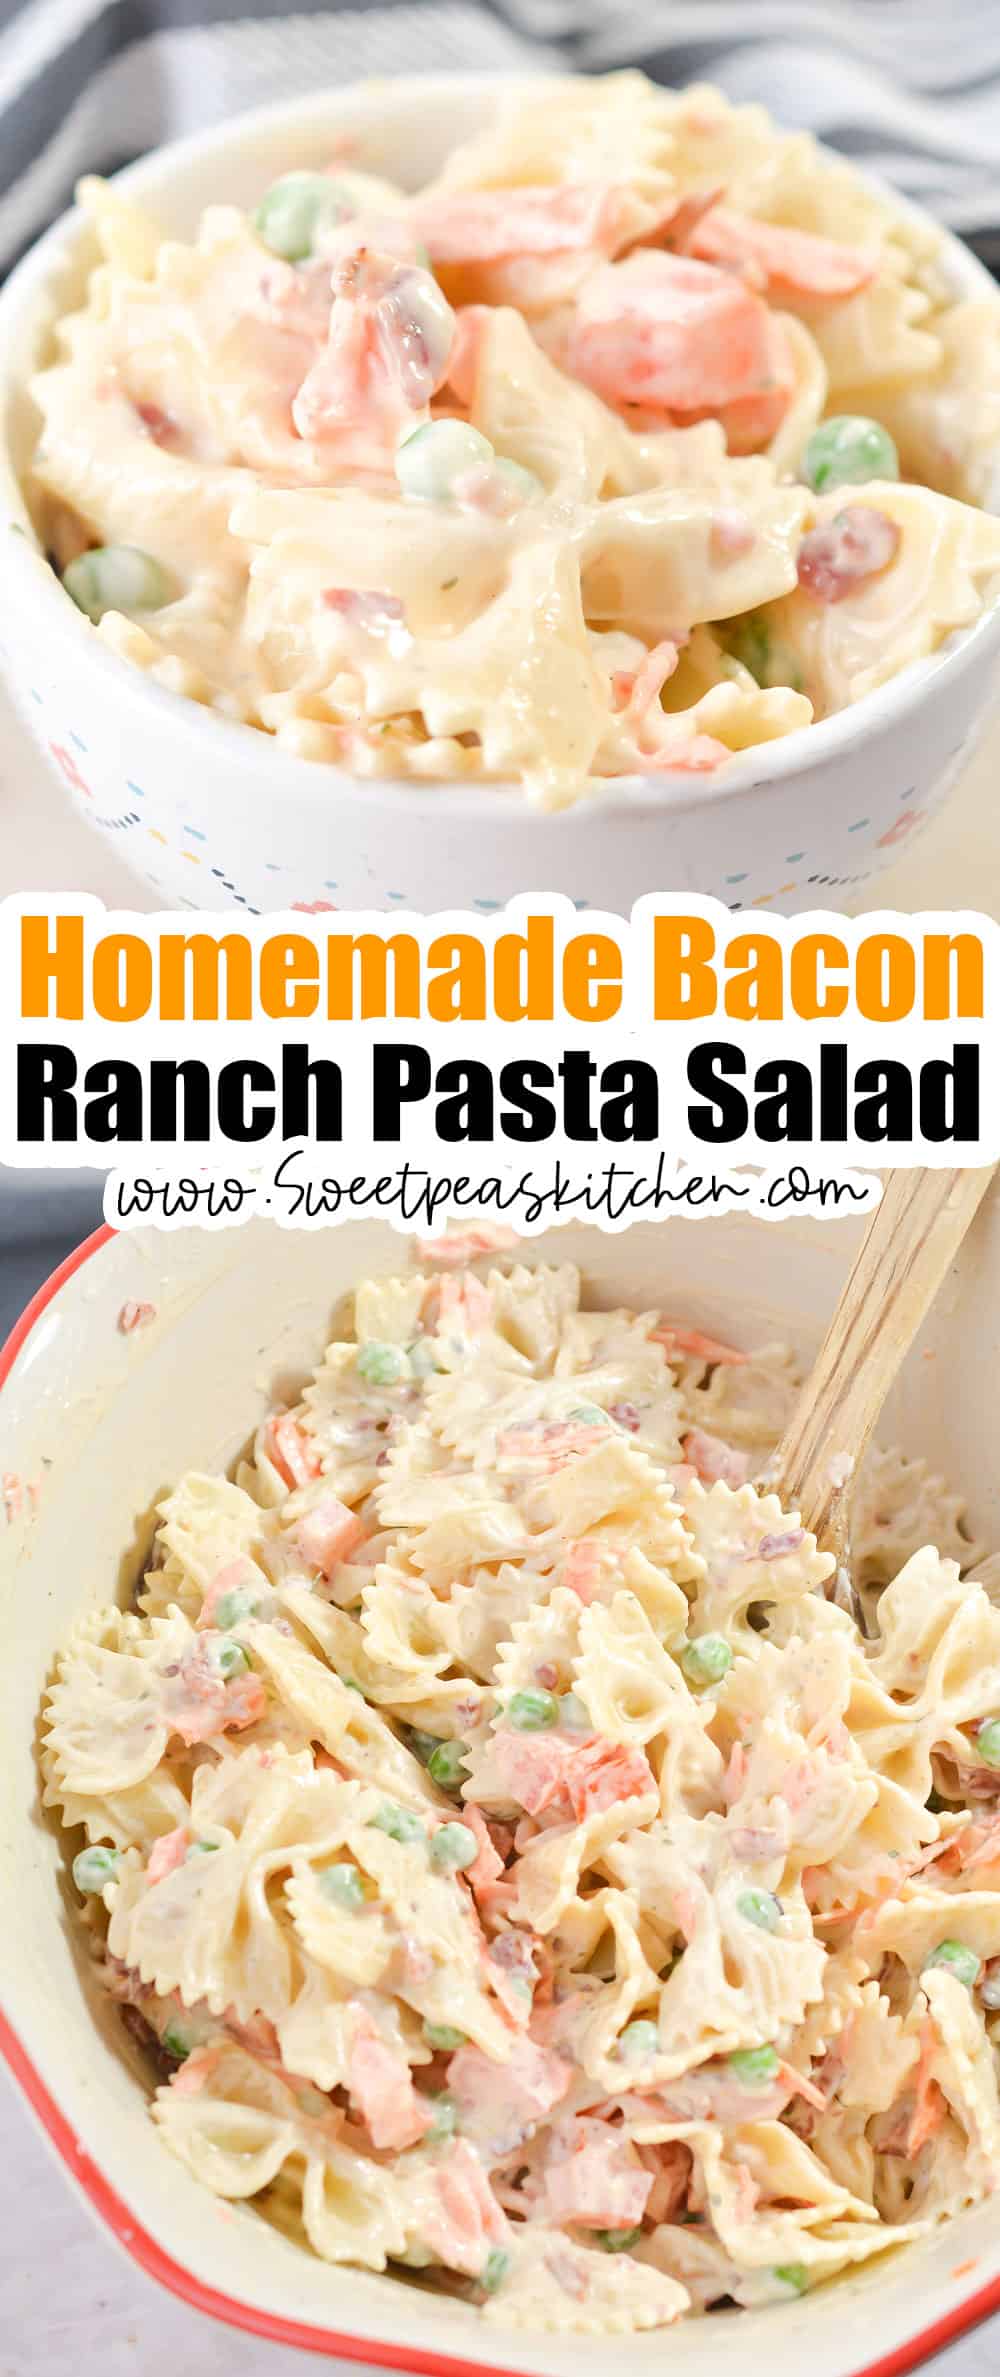 Homemade Bacon Ranch Pasta Salad